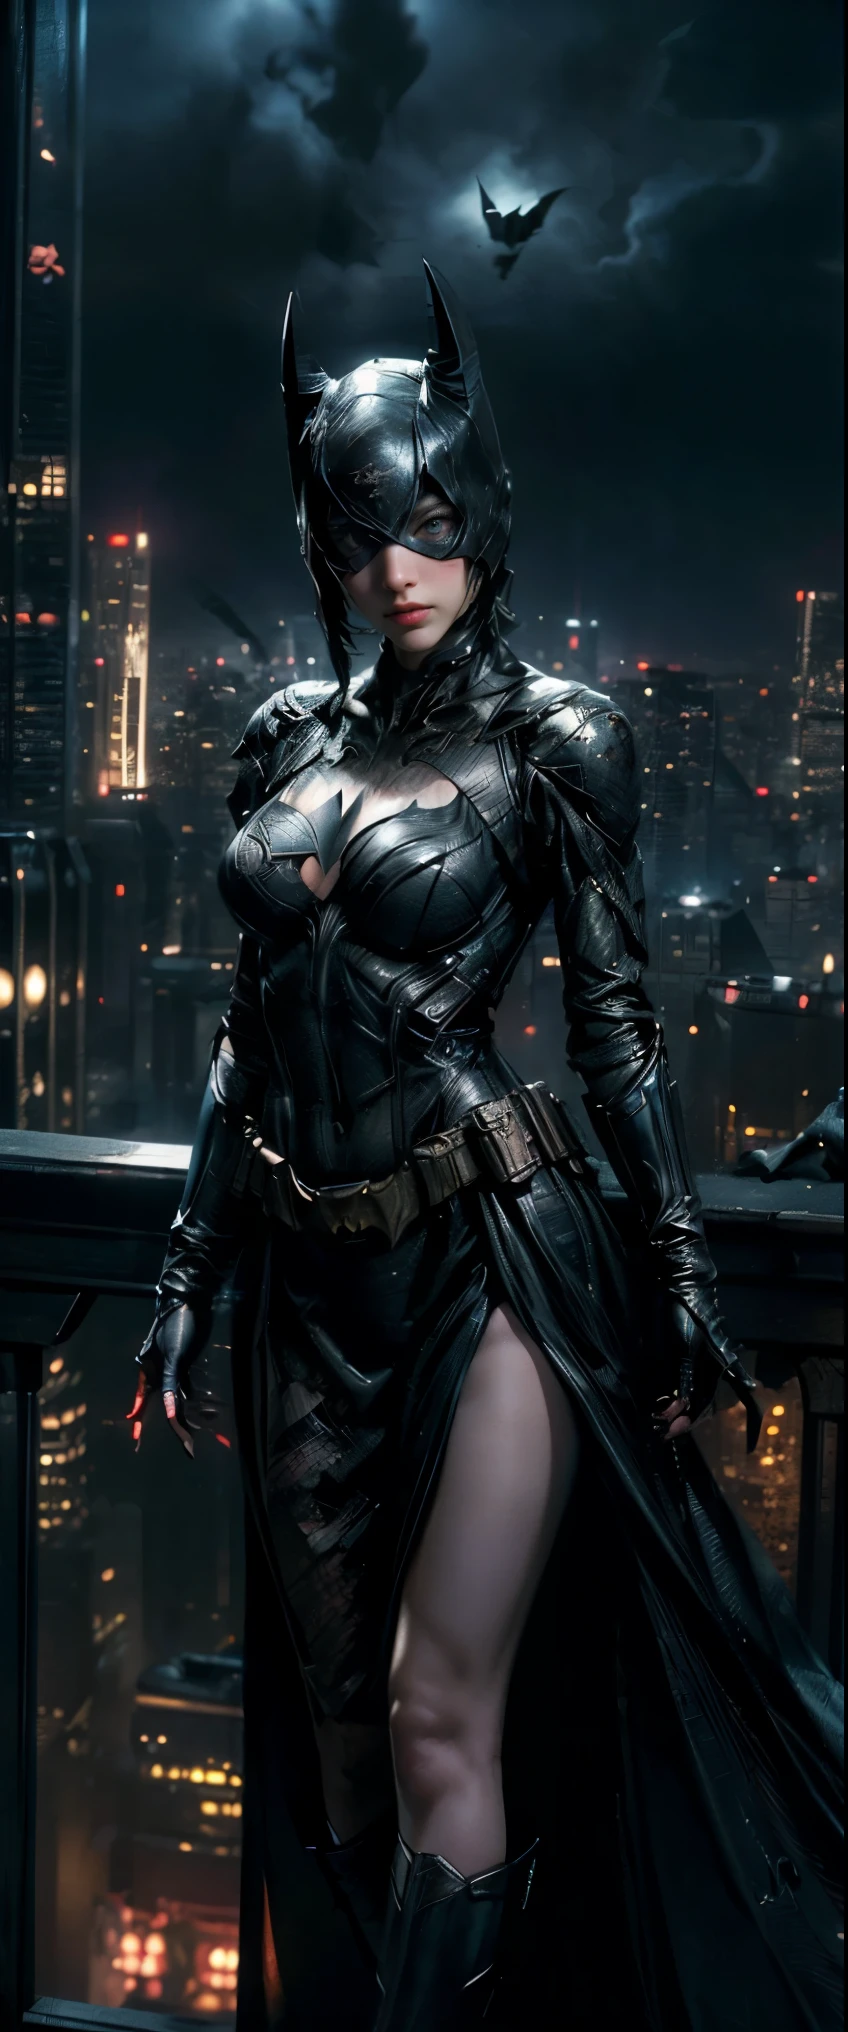 ((تحفة, أعلى جودة, دقة عالية, واقعية, خام, خلفية 8K)), (لقطة إلهة مذهلة ضخمة, حار جدا ومثير, جمال يسقط الفك, النسب المثالية, جميلة الجسم, جمال الجسم النحيف: 1.4), باتمان يقف على السطح ويطل على أفق المدينة ليلاً, جوثام city background, nighttime in جوثام city, جوثام city, من فيلم باتمان, جوثام city double exposure, جوثام city style, لقطة فيلم باتمان, metropolis filmic جوثام city, باتمان السايبربانك, صورة ثابتة من فيلم باتمان, في فيلم باتمان لا يزال سينمائيا, جوثام setting, باتمان, جوثام, 